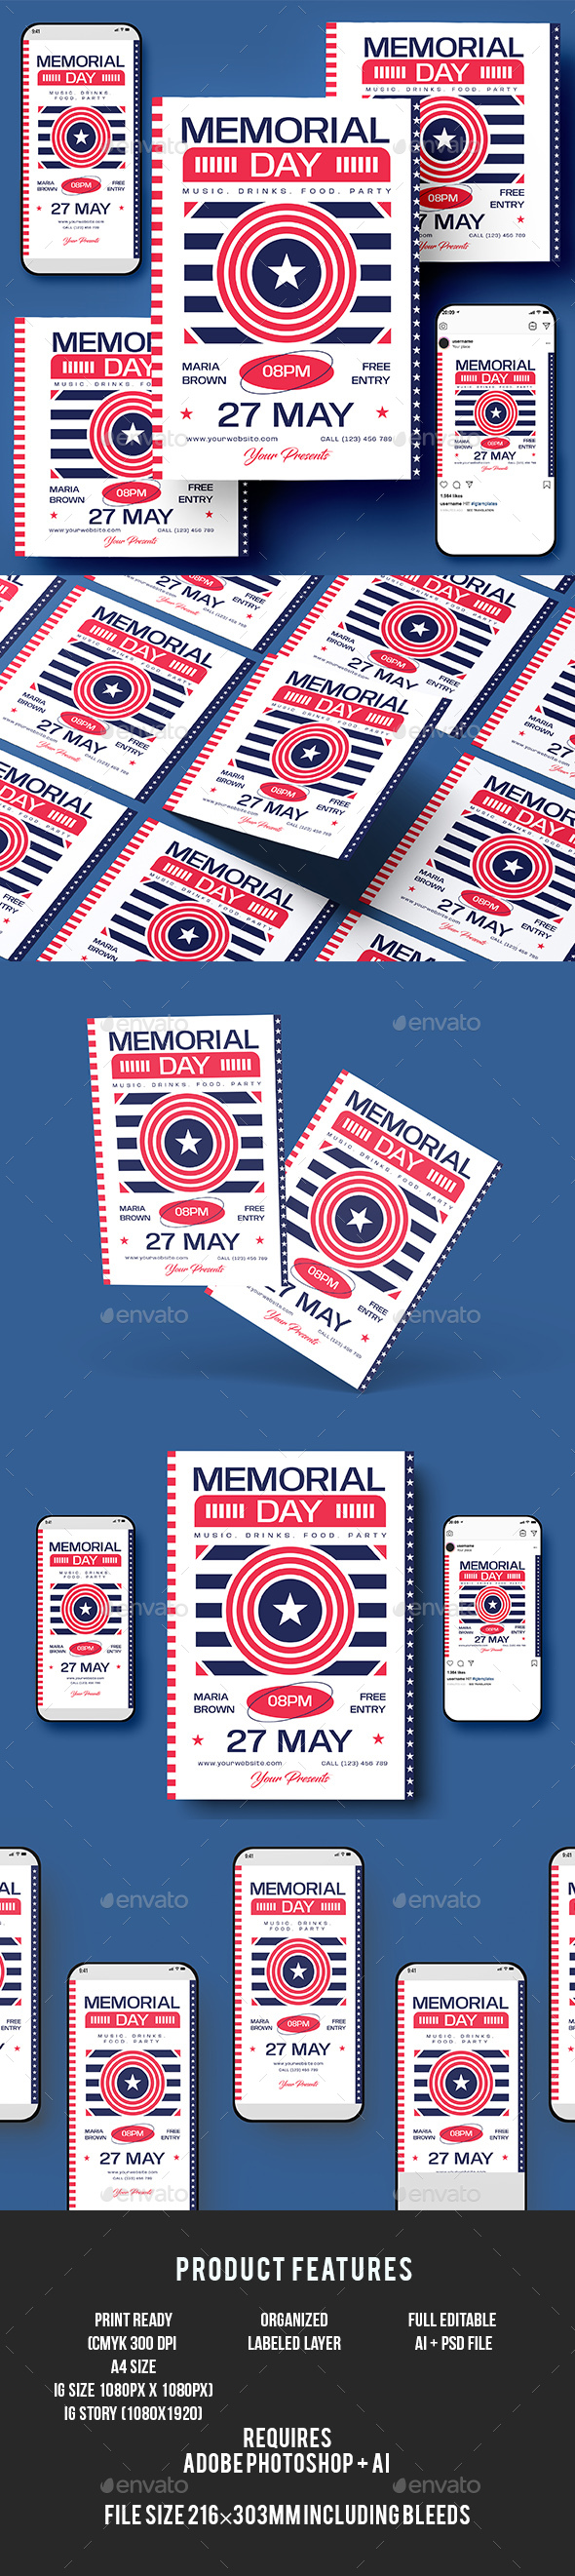 [DOWNLOAD]Memorial Day Flyer